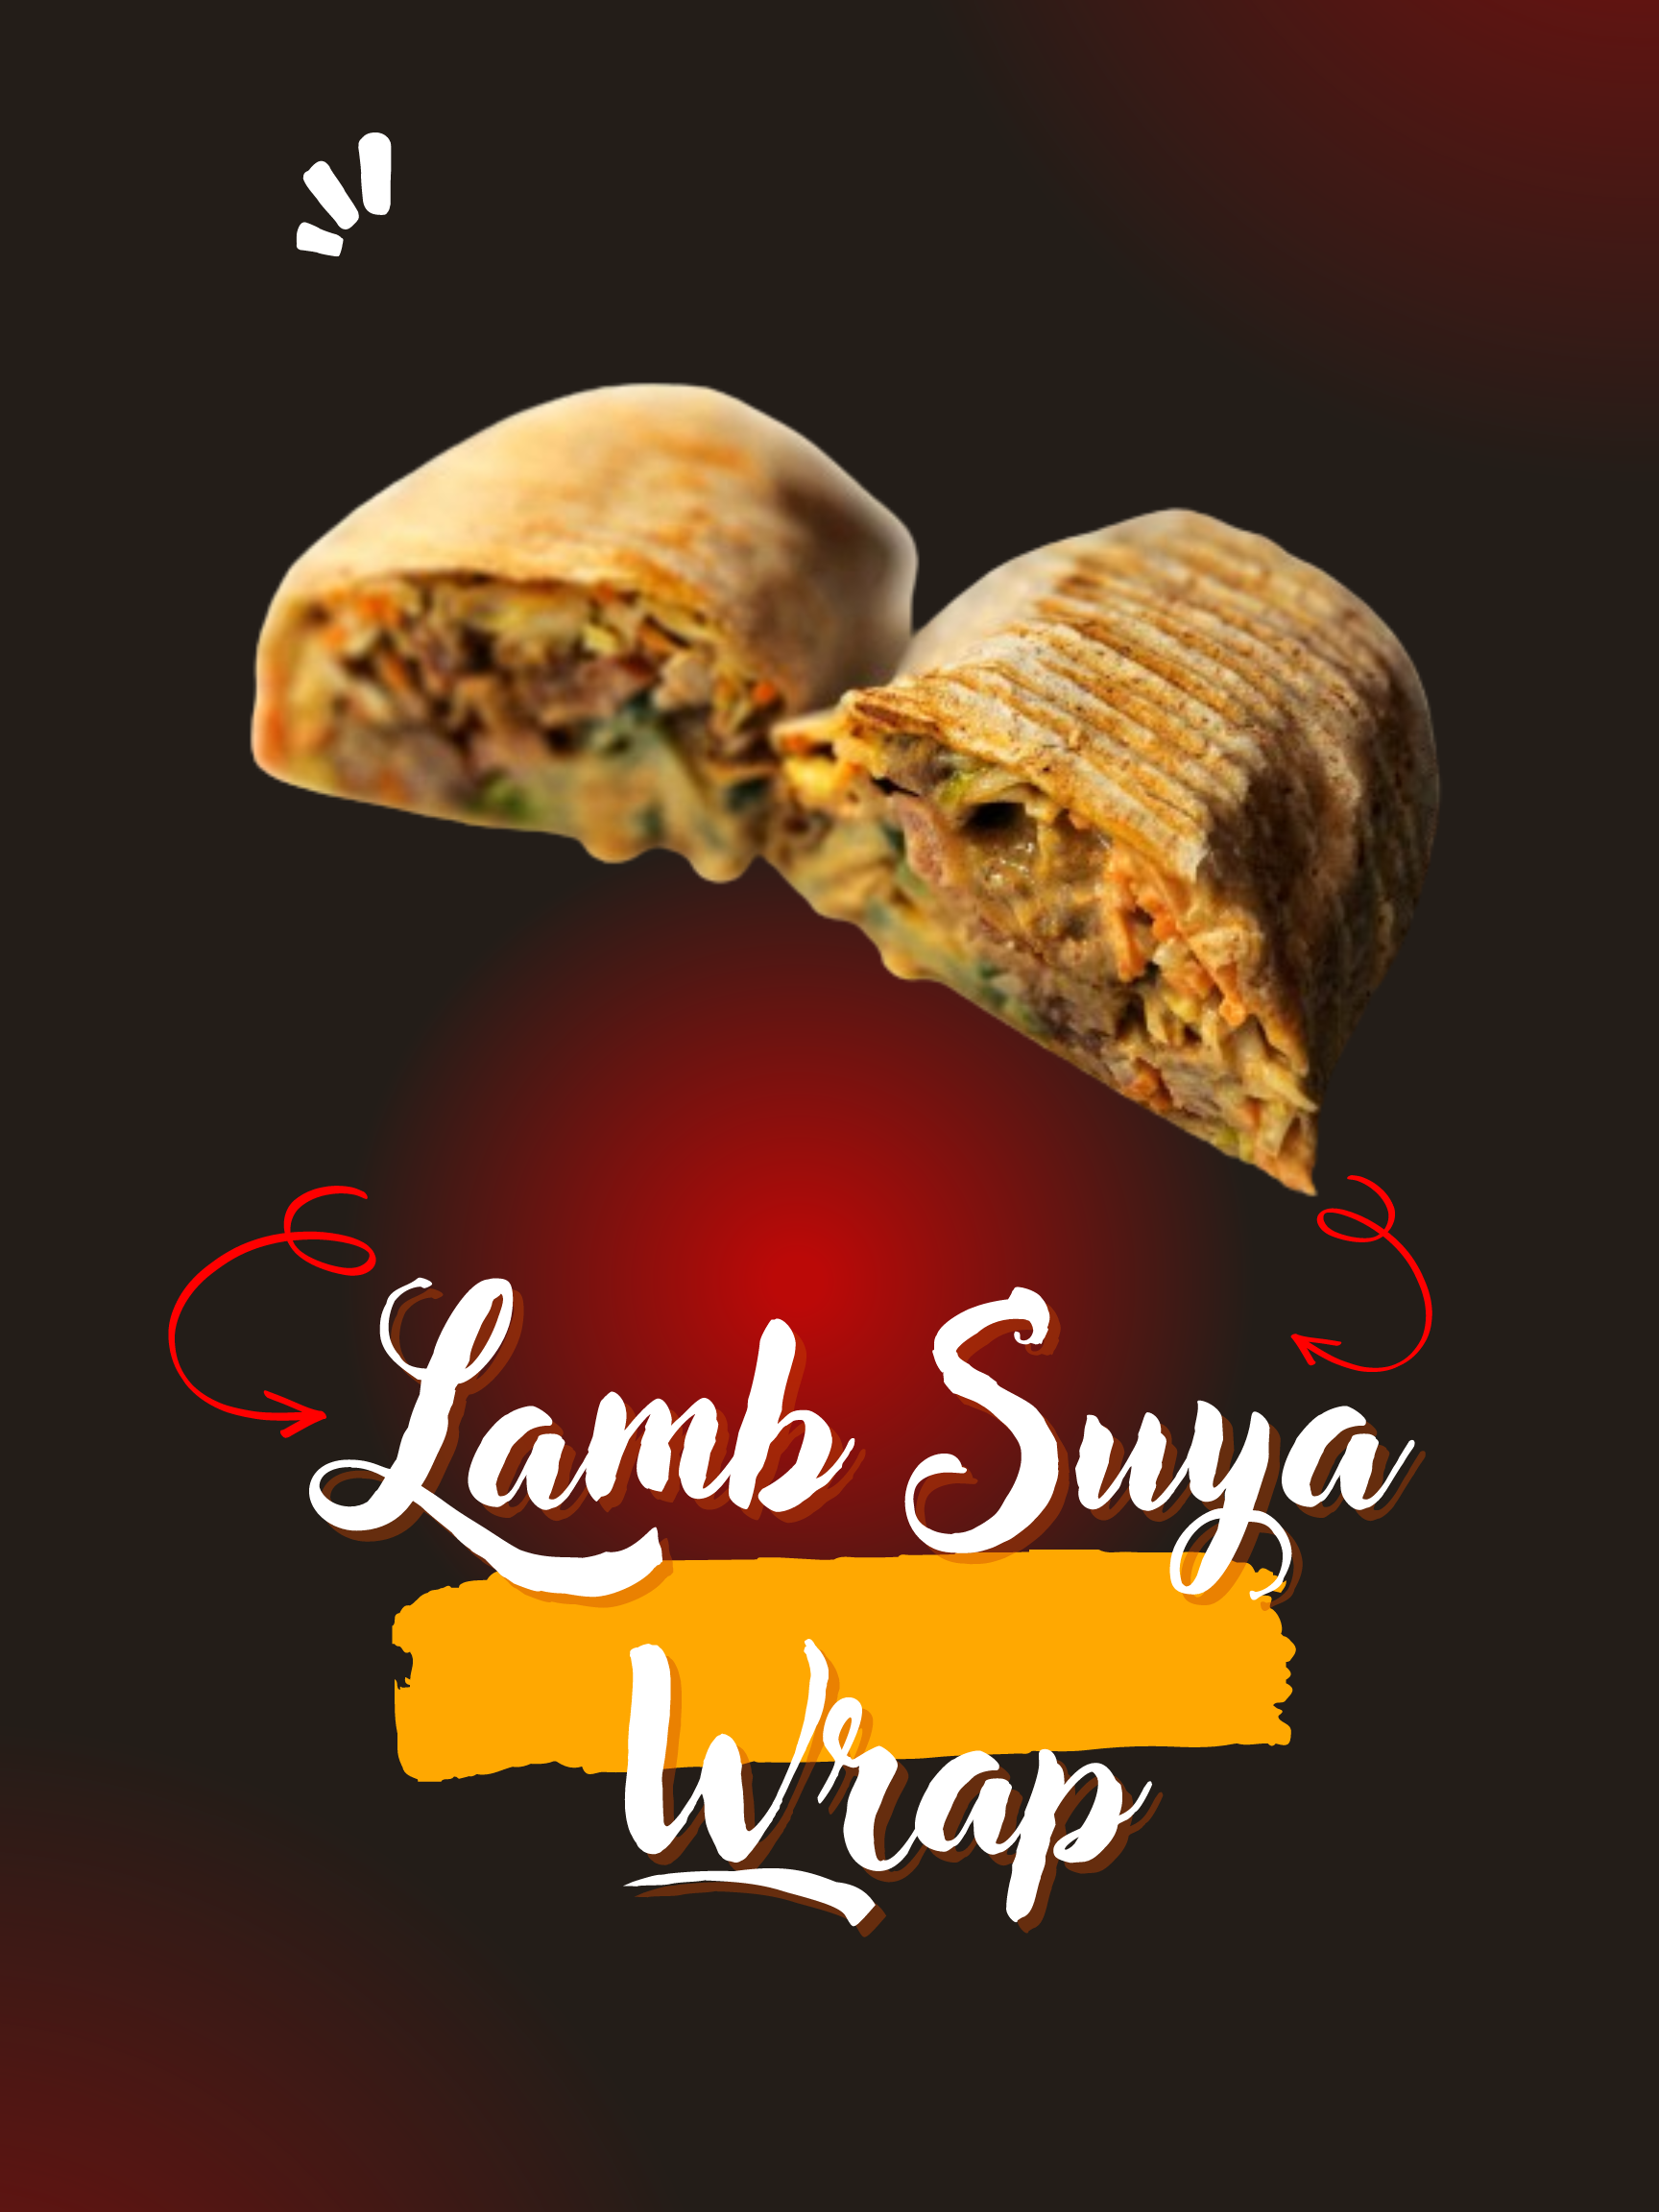 Lamb suya wrap